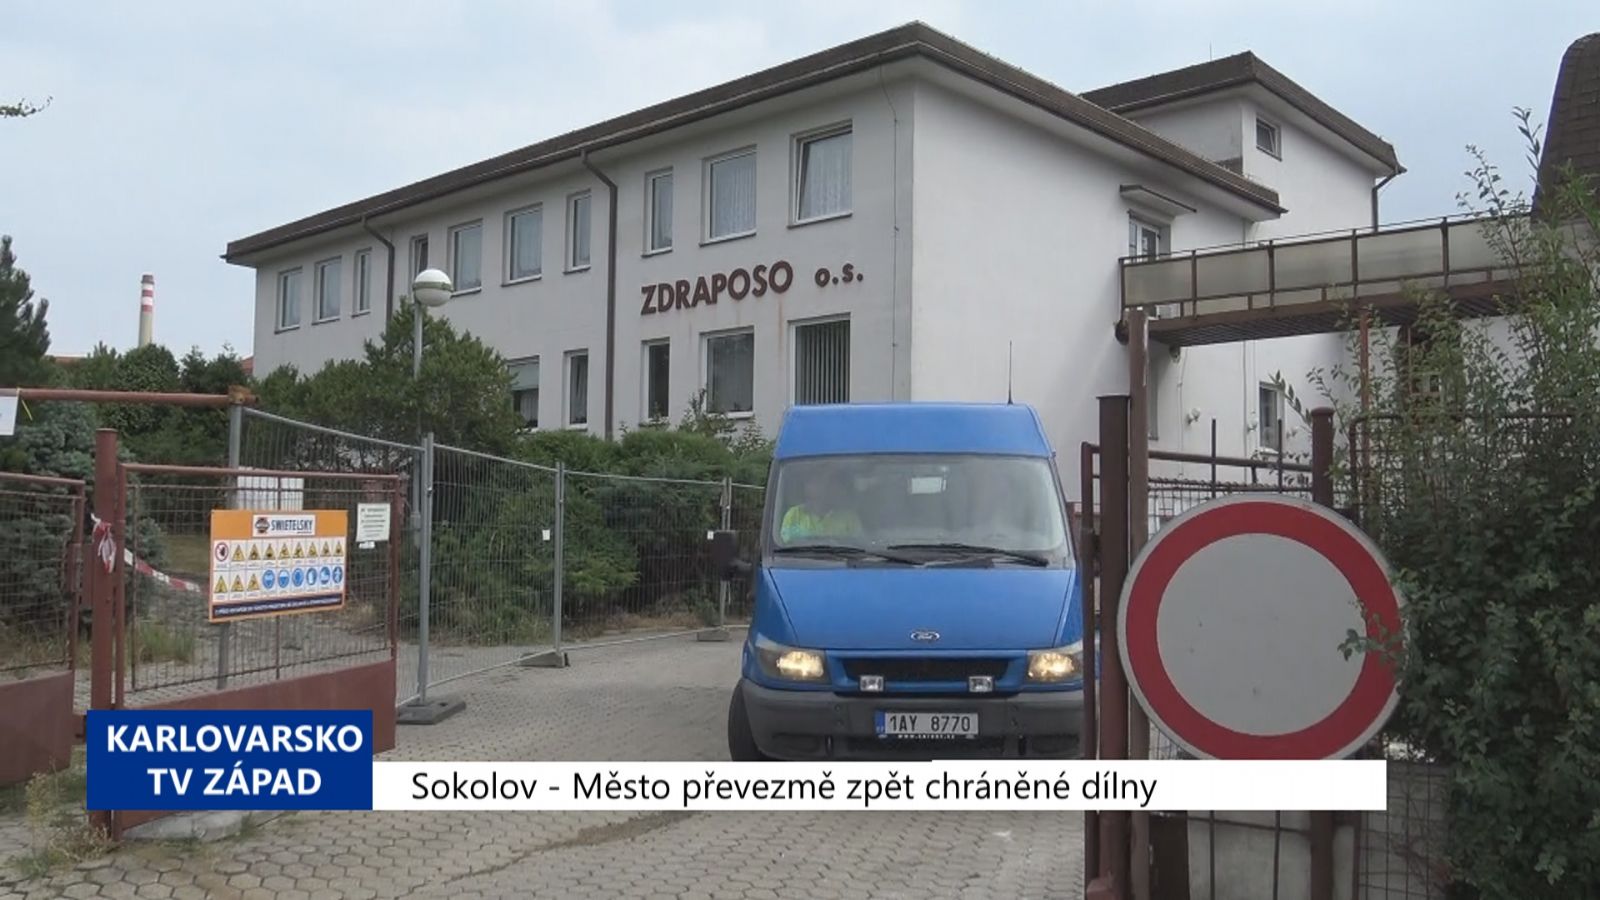 Sokolov: Město převezme zpět chráněné dílny (TV Západ)